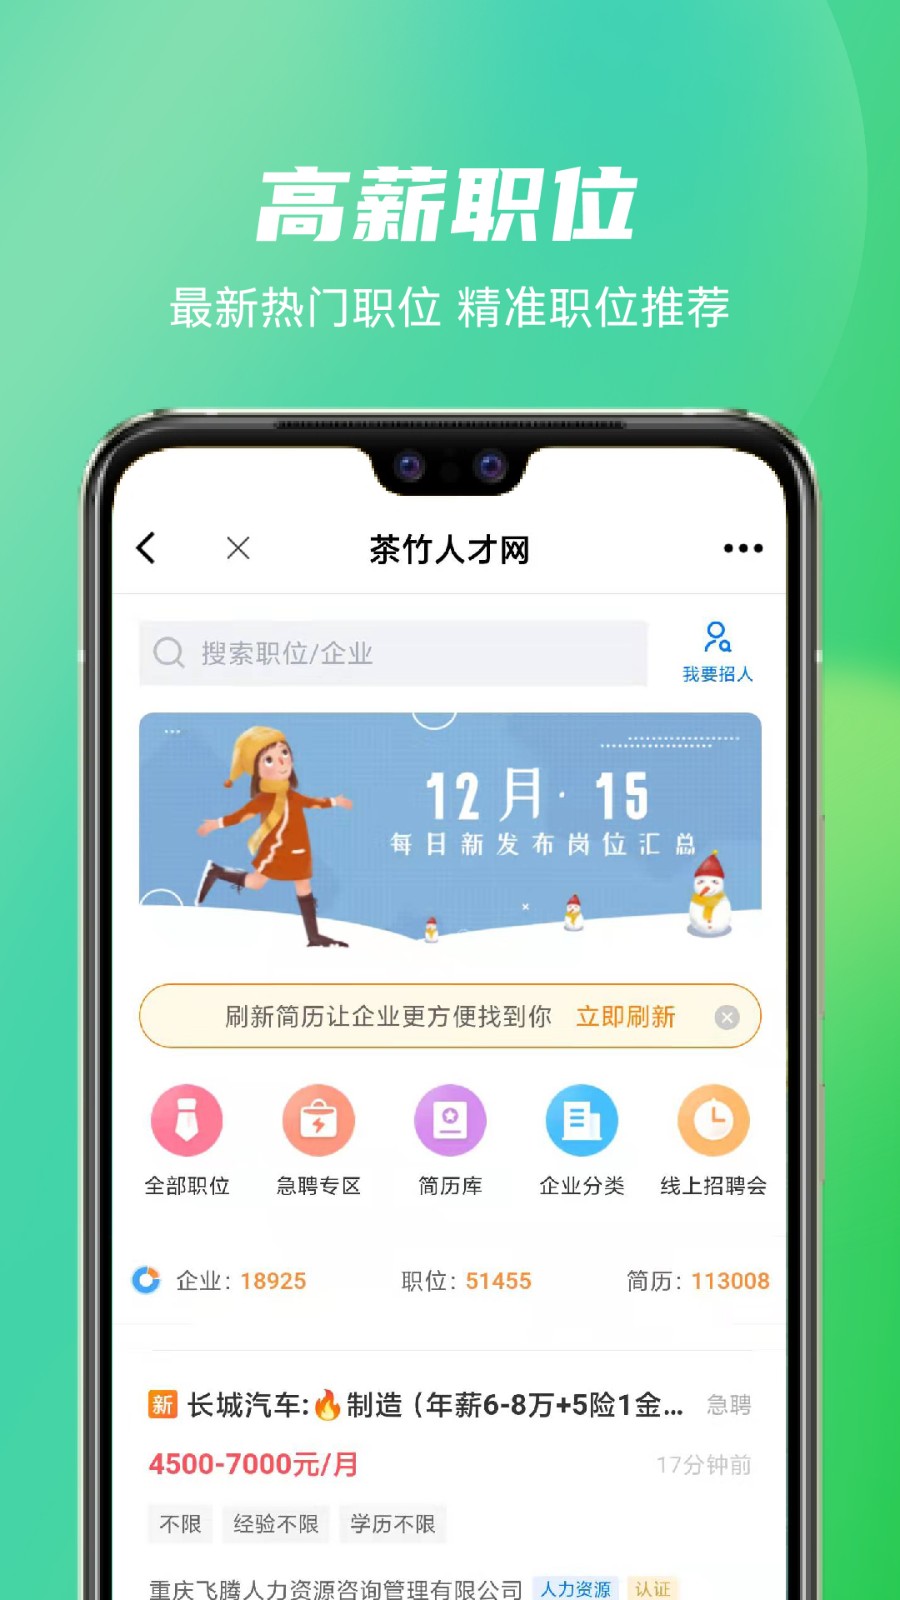 茶竹人才网app下载手机版